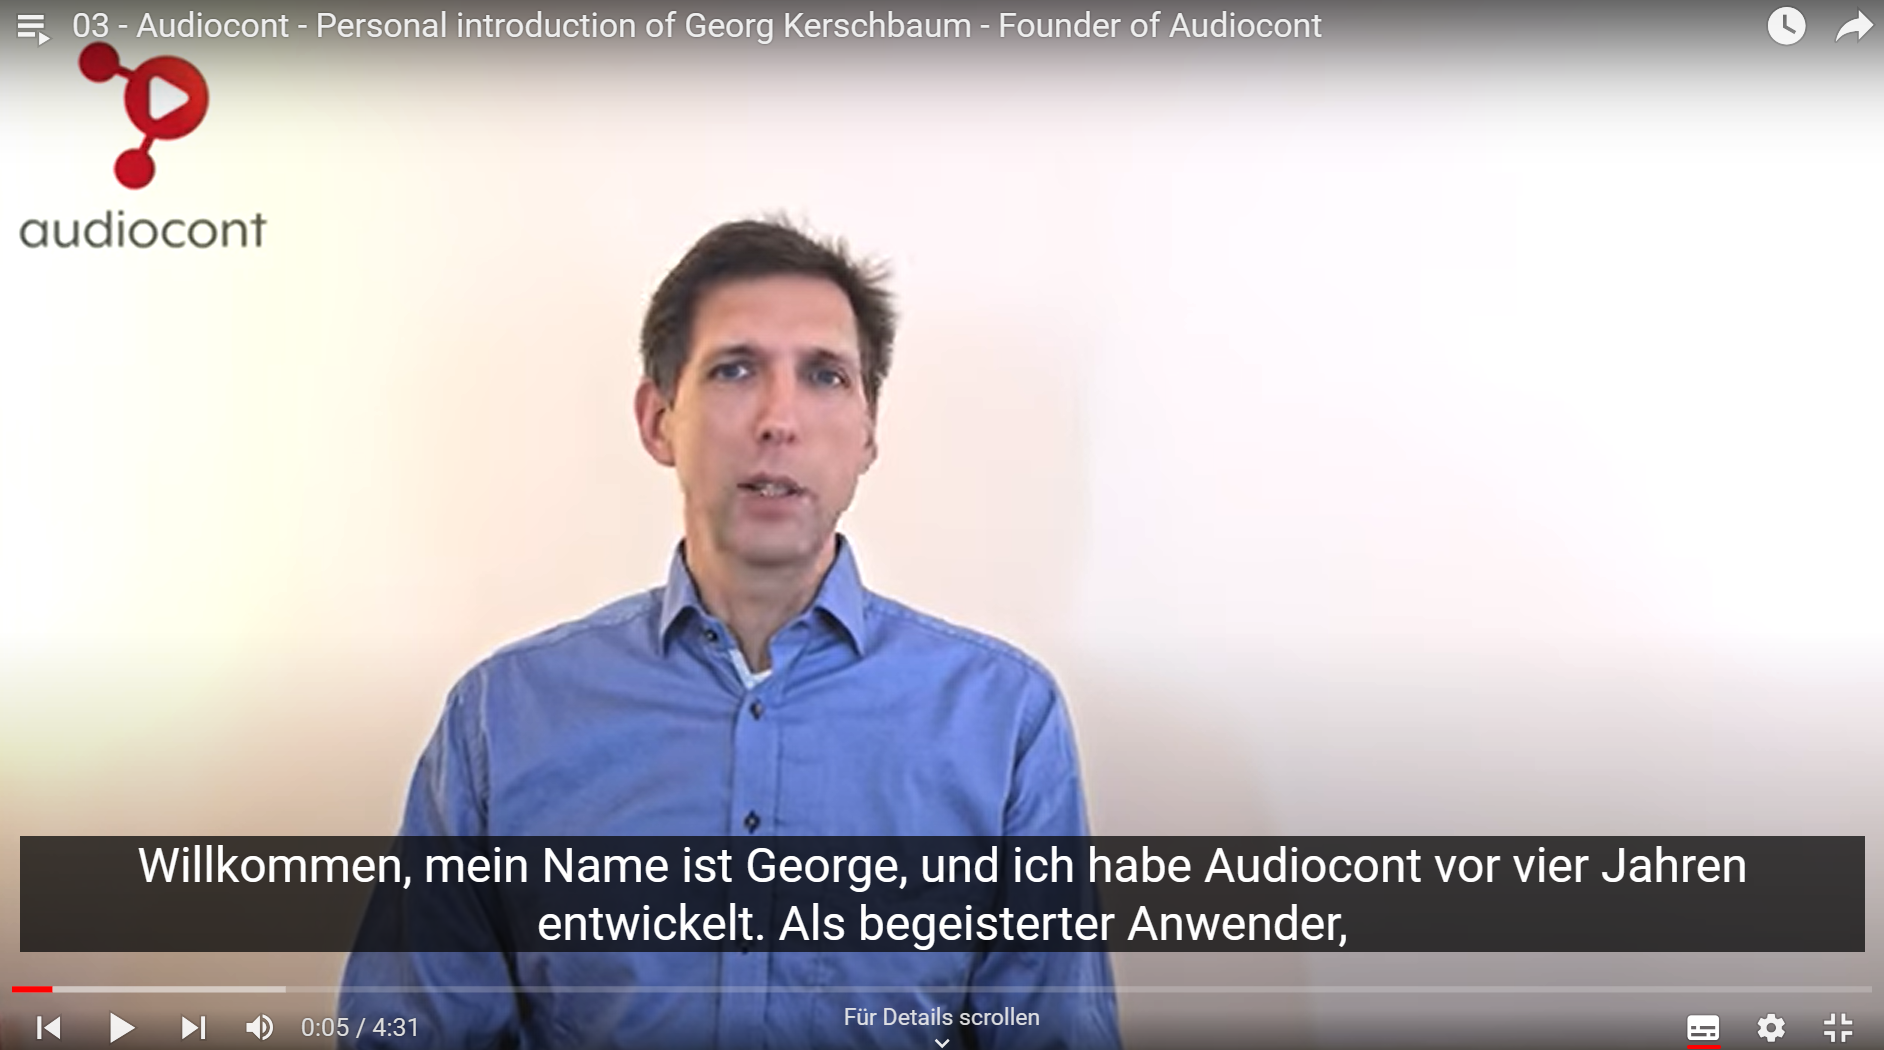 Welcome - Georg Kerschbaum